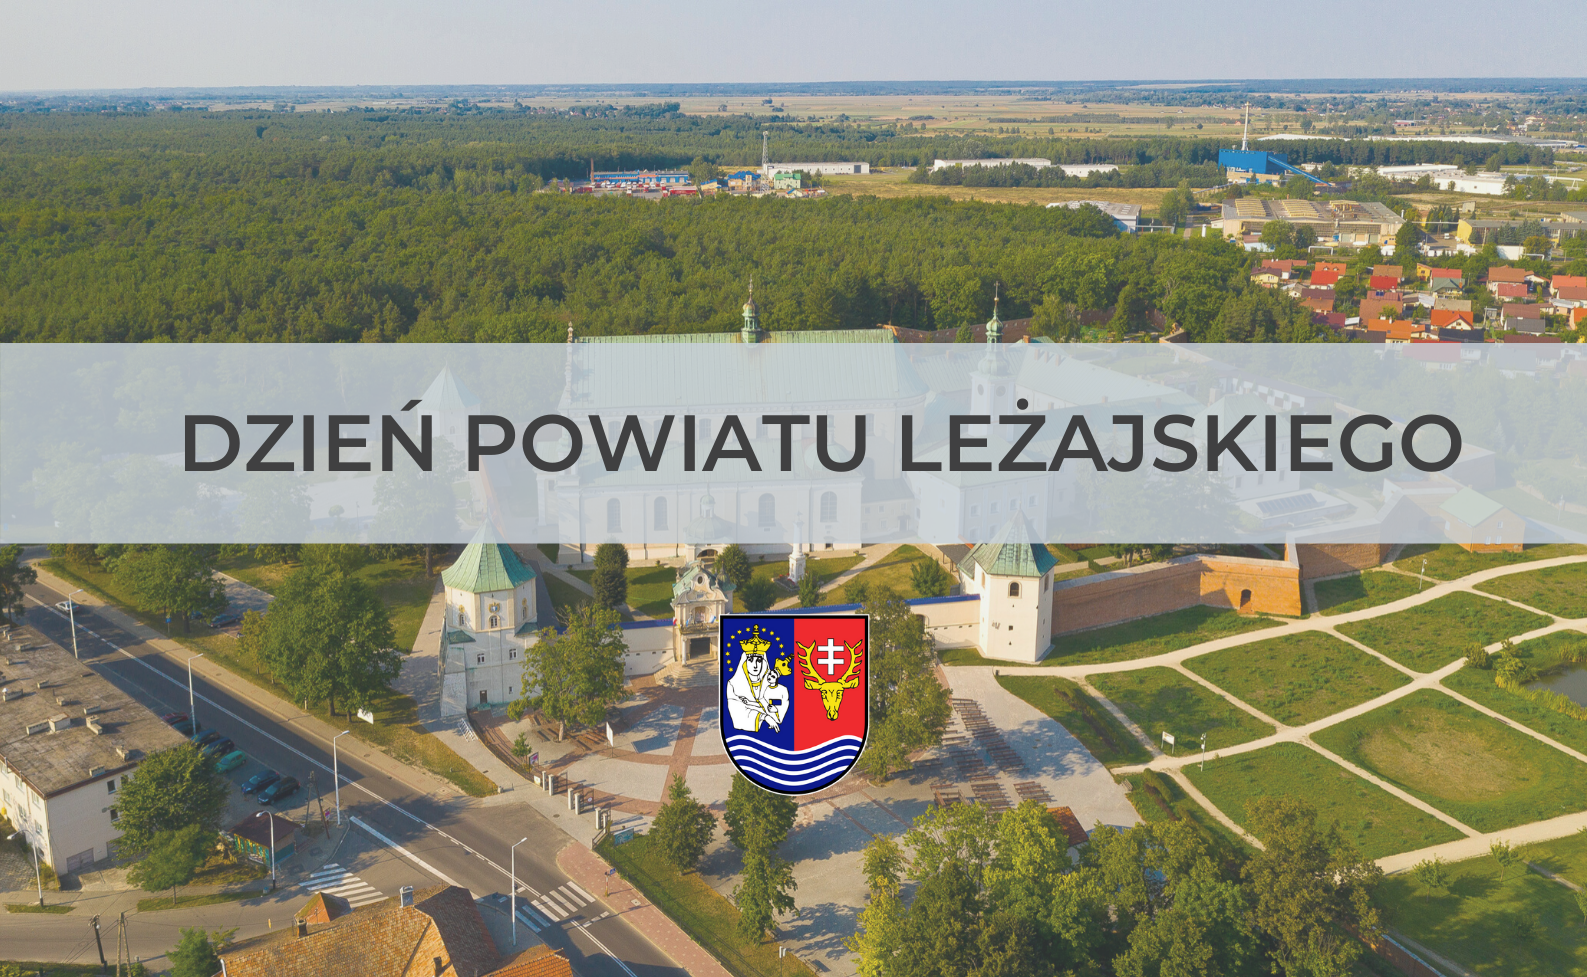 Symbolicznie uczczono Dzień Powiatu Leżajskiego